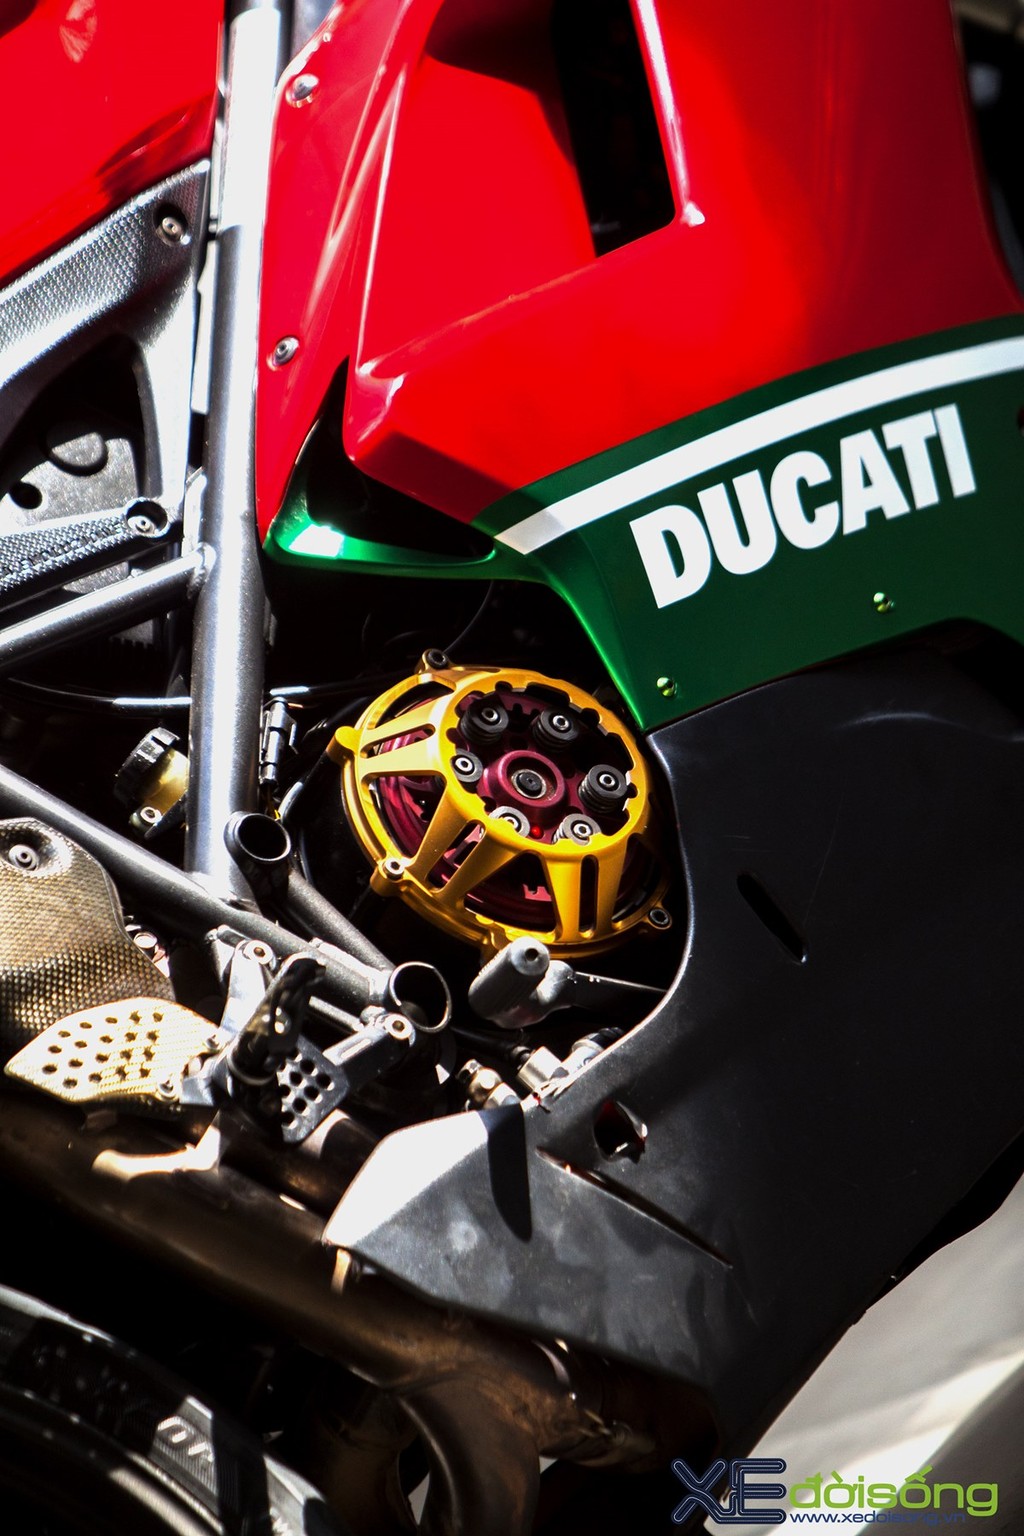 Ngắm Ducati 1198, huyền thoại trong làng Super Bike xi-lanh đôi ảnh 3